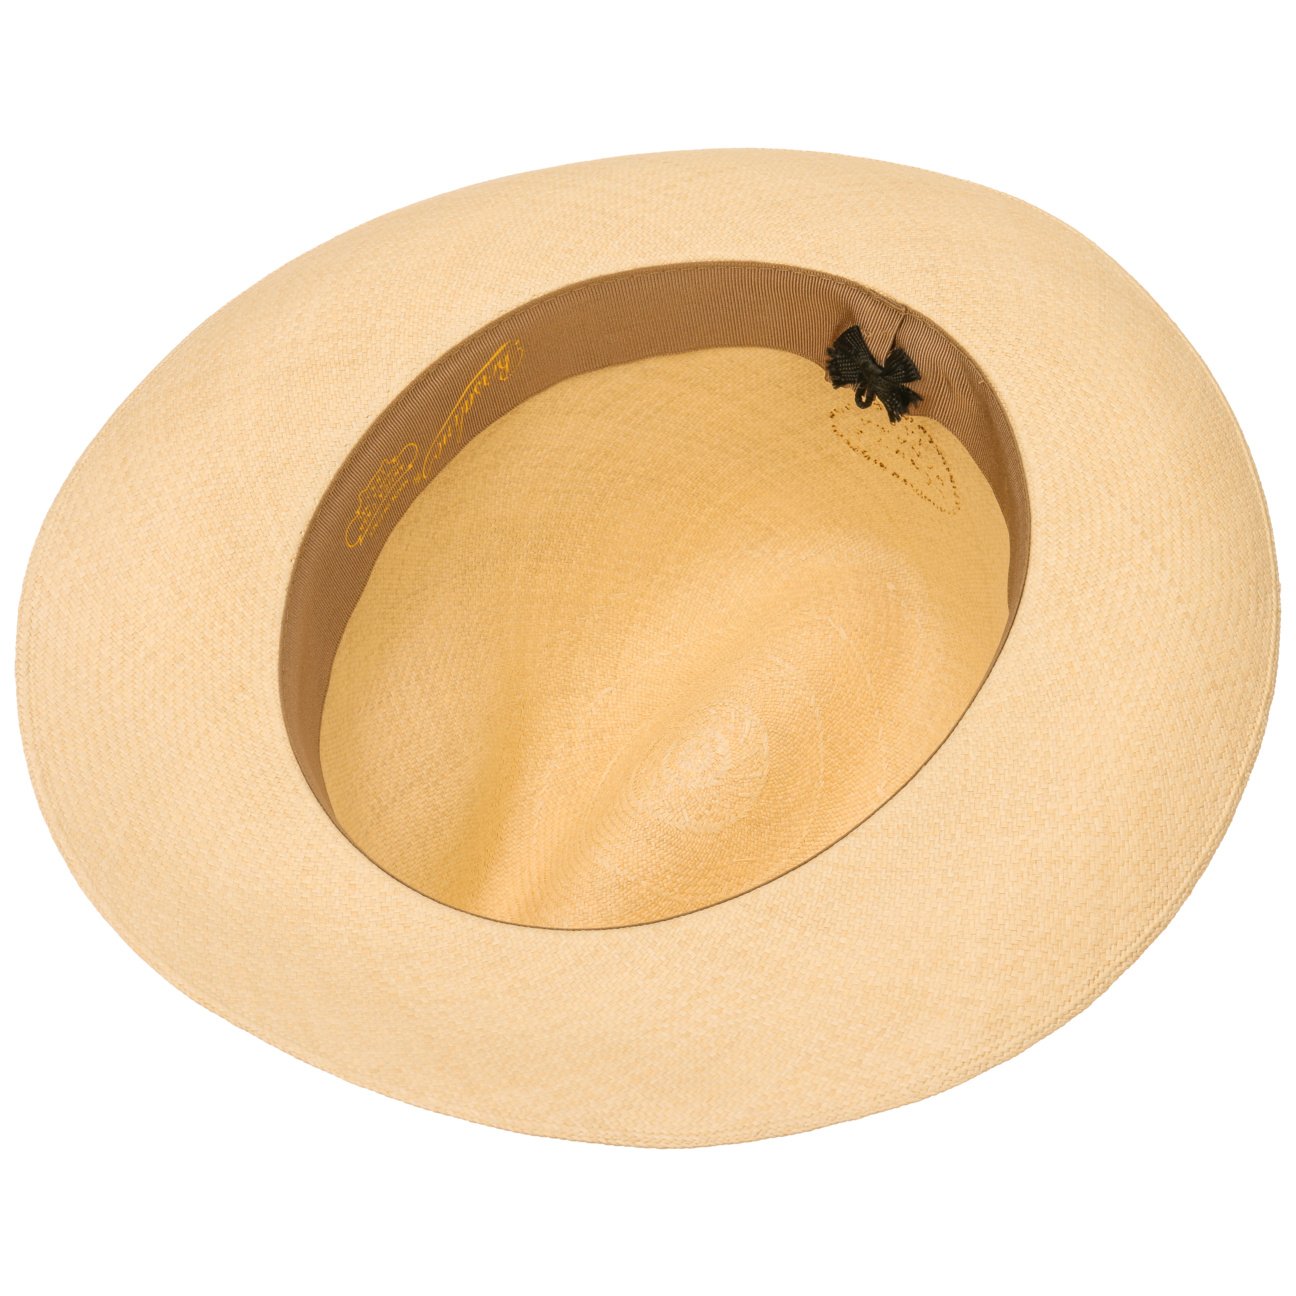 Fein gelochter Panamahut in Bogartform Hut Hüte Handarbeit Strohhut Panama 